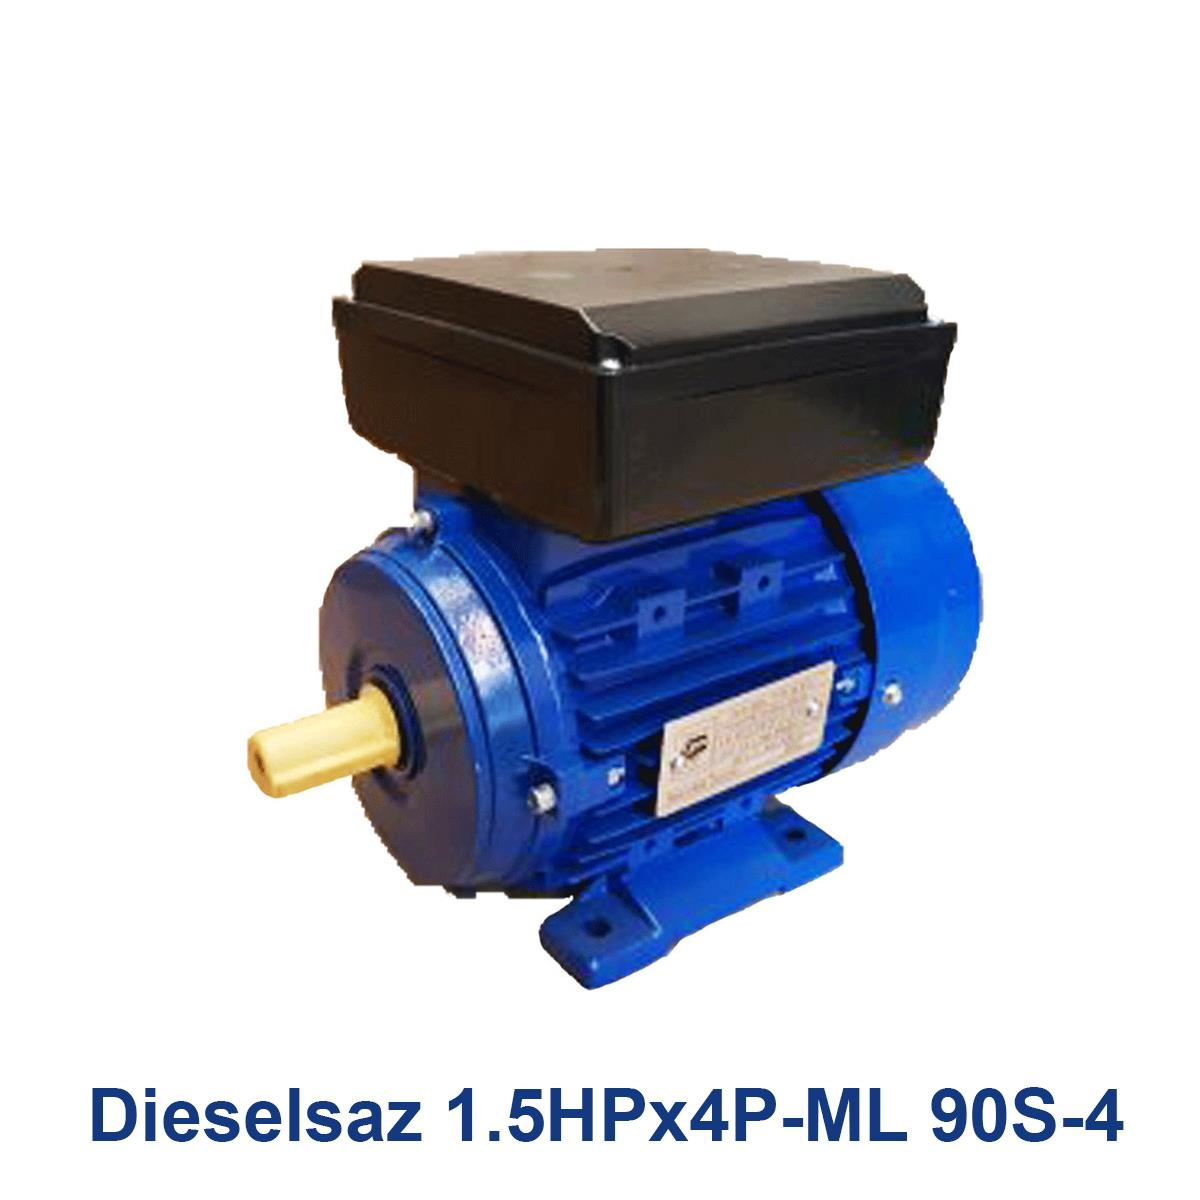 Dieselsaz-1.5HPx4P-ML-90S-4